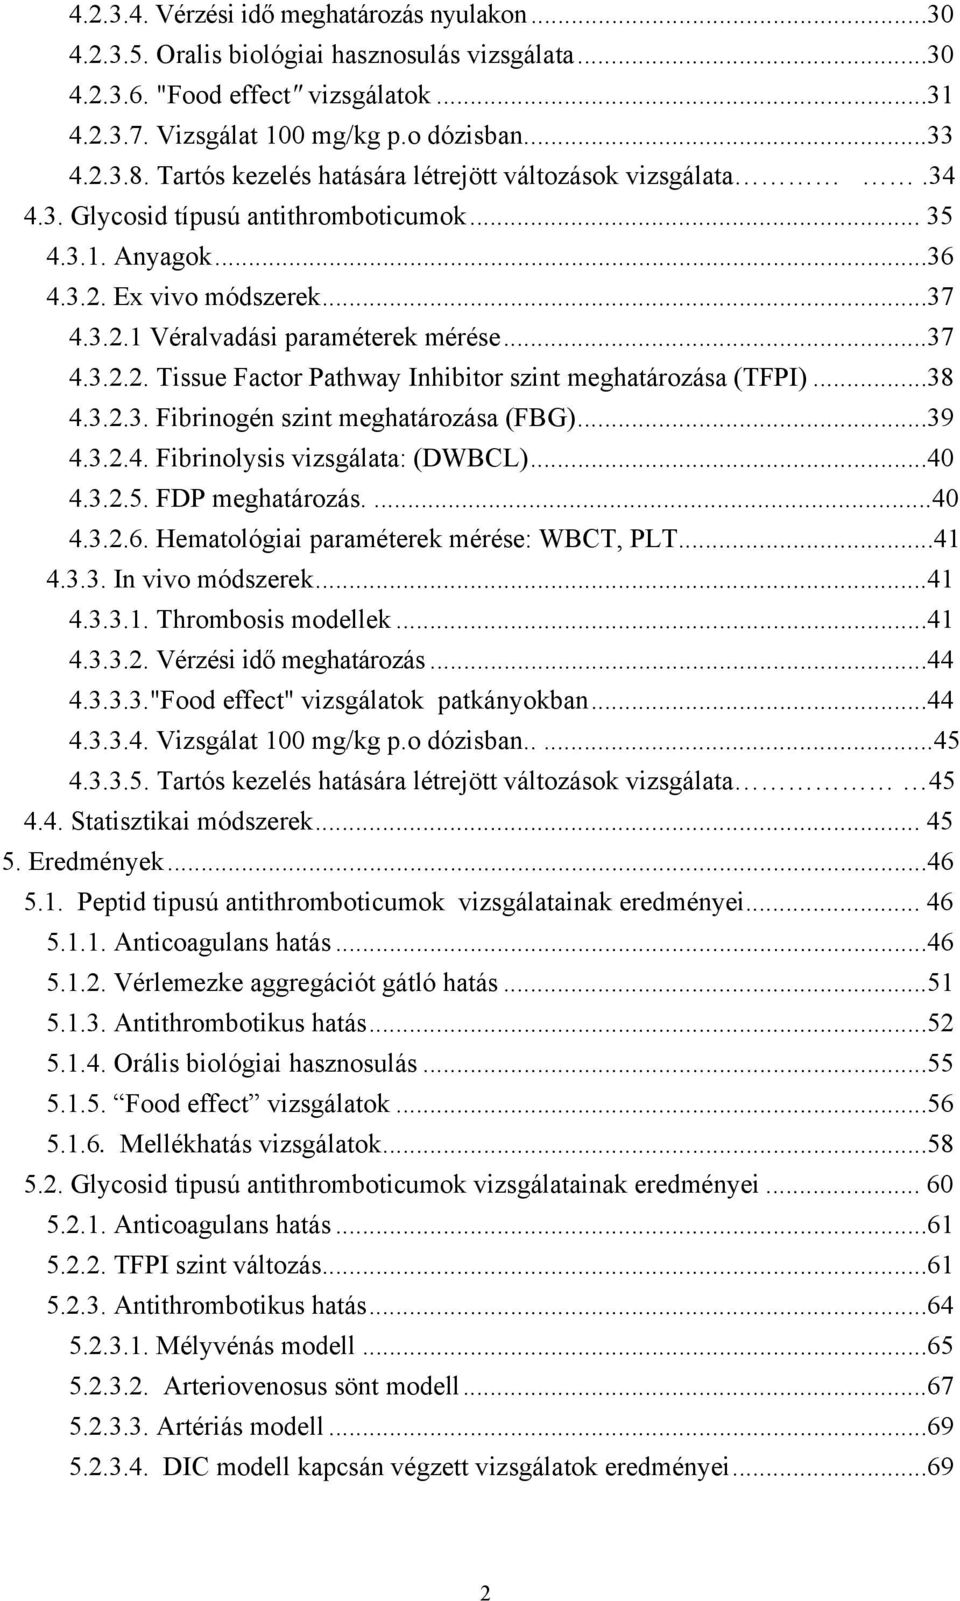 ..38 4.3.2.3. Fibrinogén szint meghatározása (FBG)...39 4.3.2.4. Fibrinolysis vizsgálata: (DWBCL)...40 4.3.2.5. FDP meghatározás....40 4.3.2.6. Hematológiai paraméterek mérése: WBCT, PLT...41 4.3.3. In vivo módszerek.